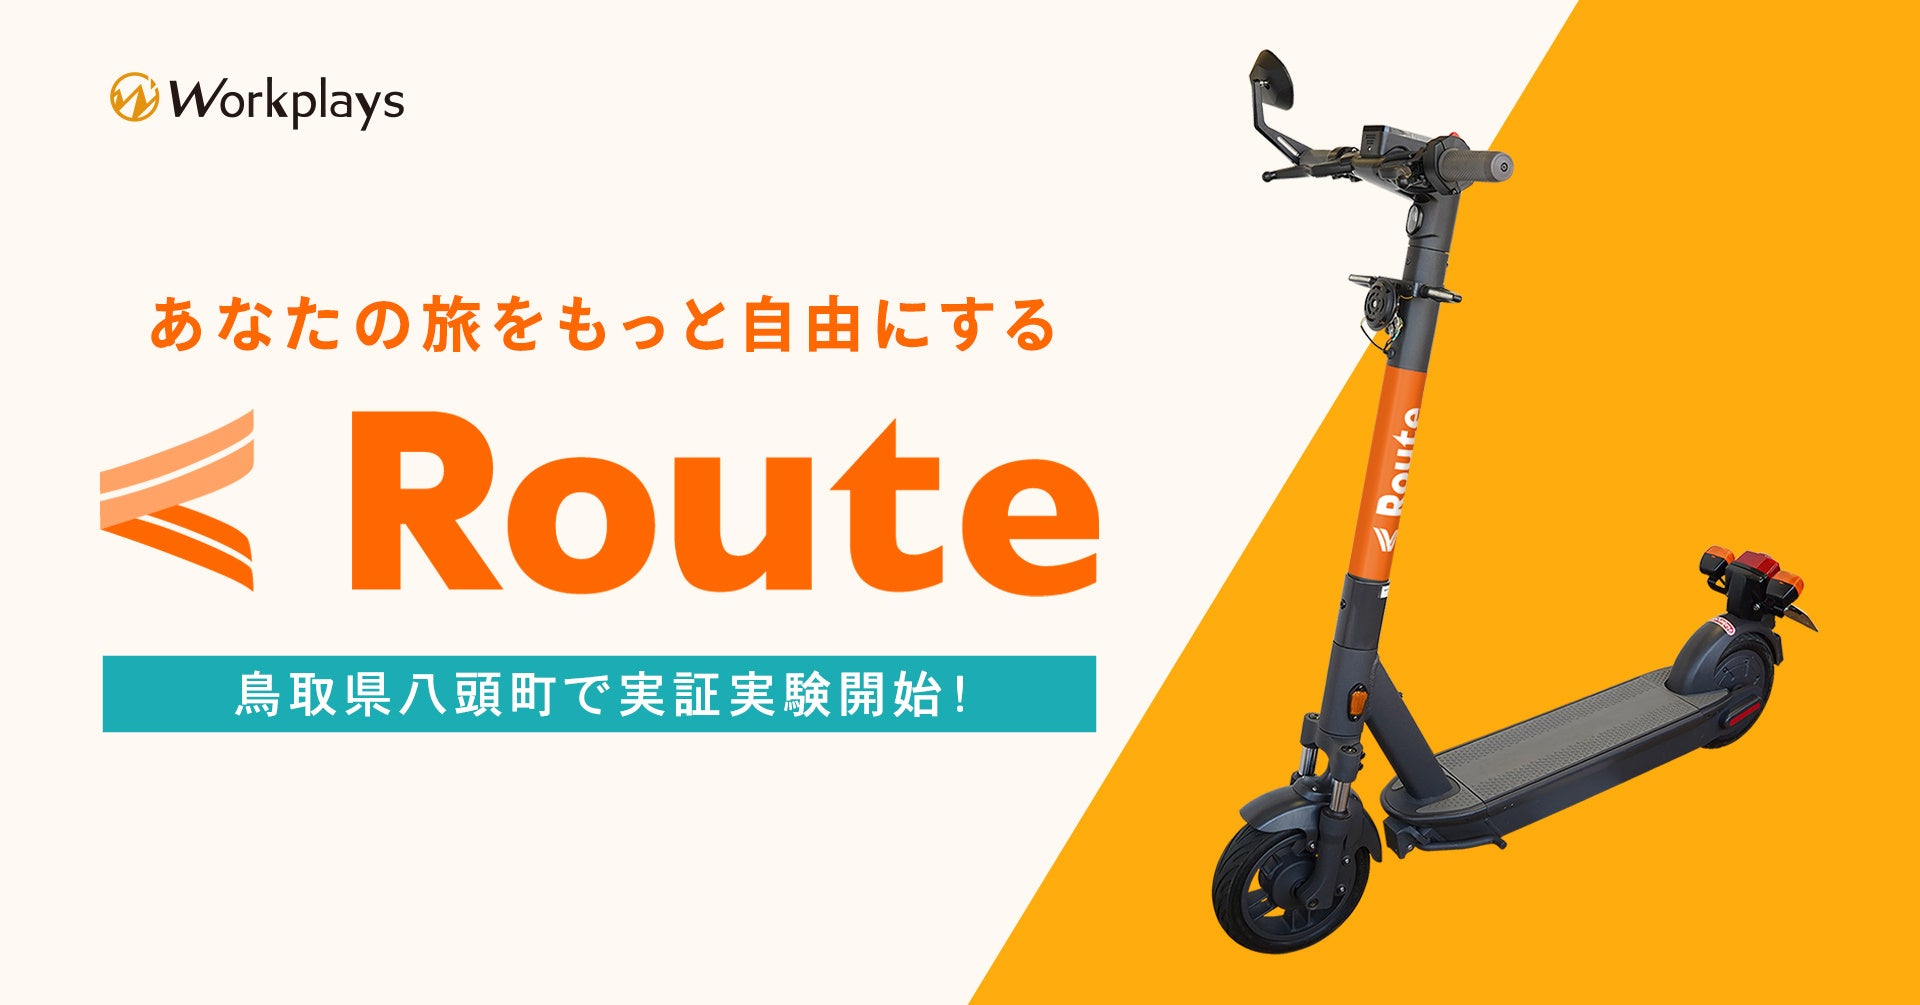 “あなたの旅をもっと自由にする”観光型電動キックボードシェアリングサービス「Route」鳥取県八頭郡にて実証実験を始動